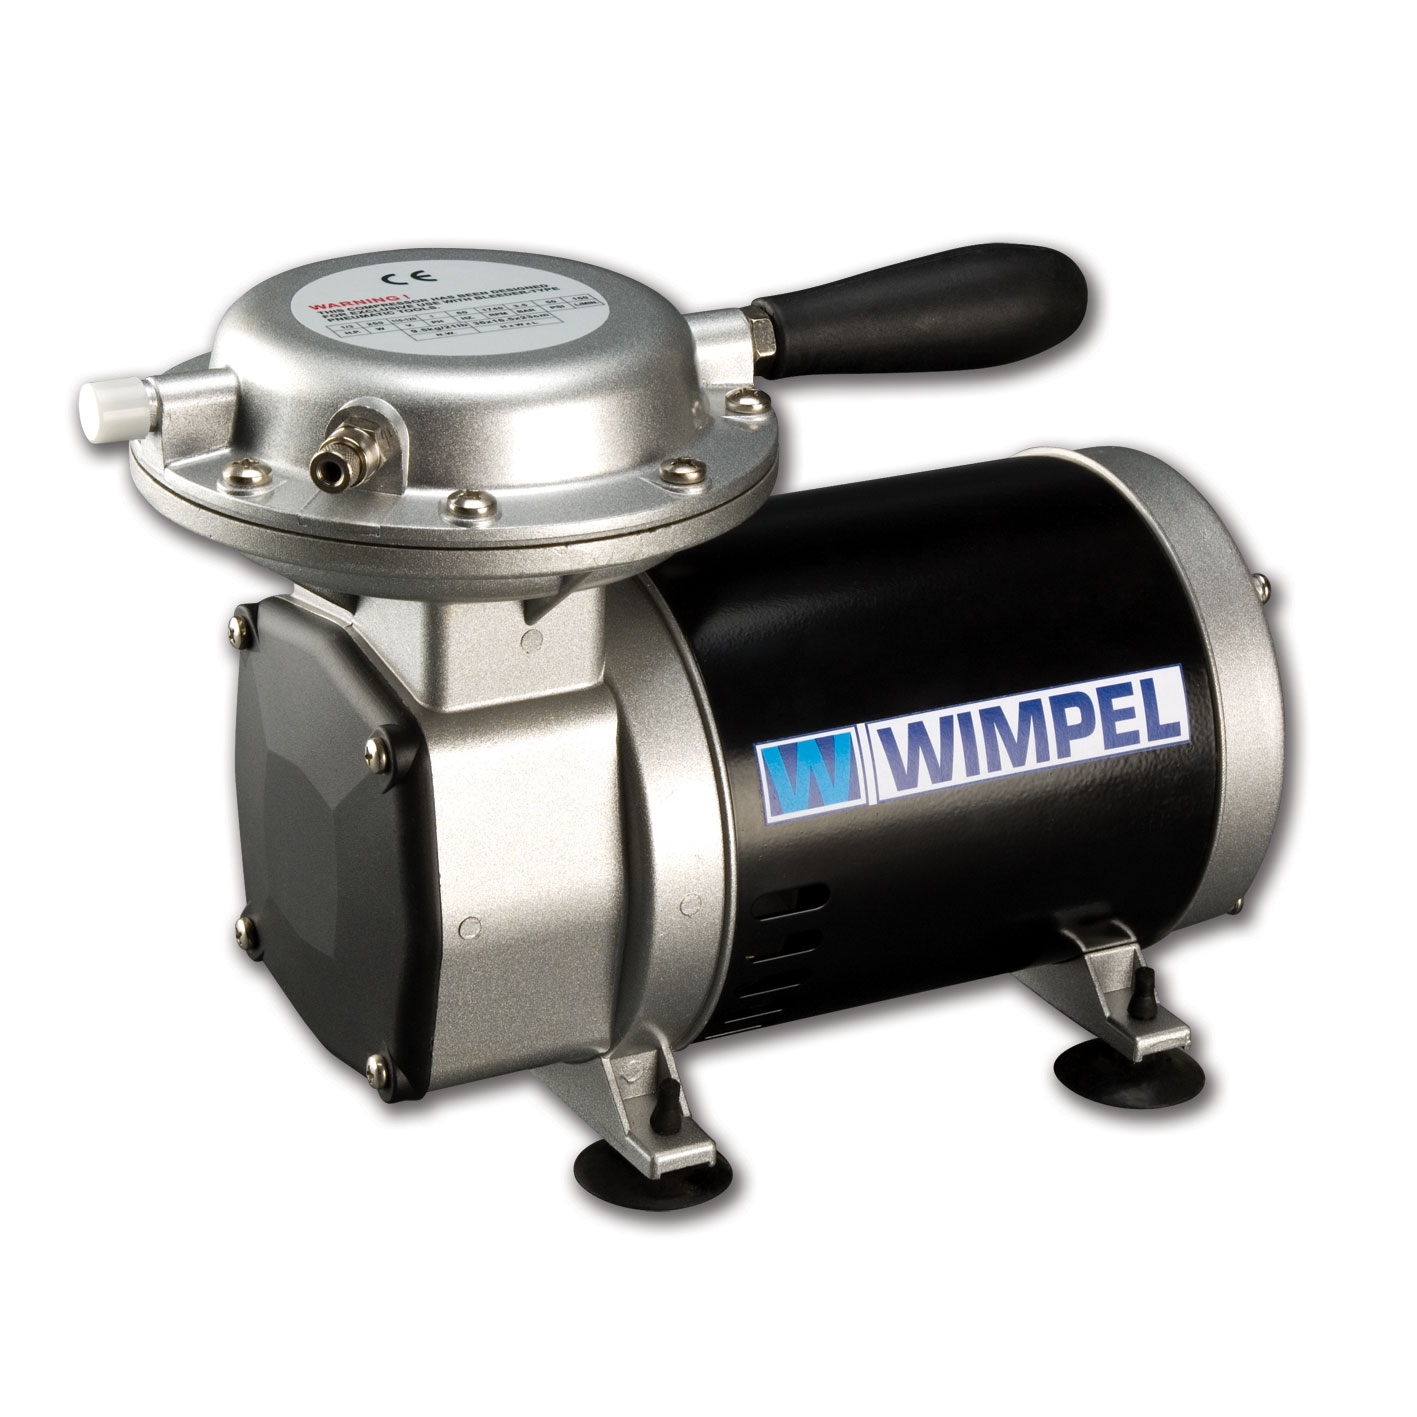 Compressor Wimpel Comp2 para Pistolas e Aerógrafos-Bivolt - melhor Tufãozinho do mercado